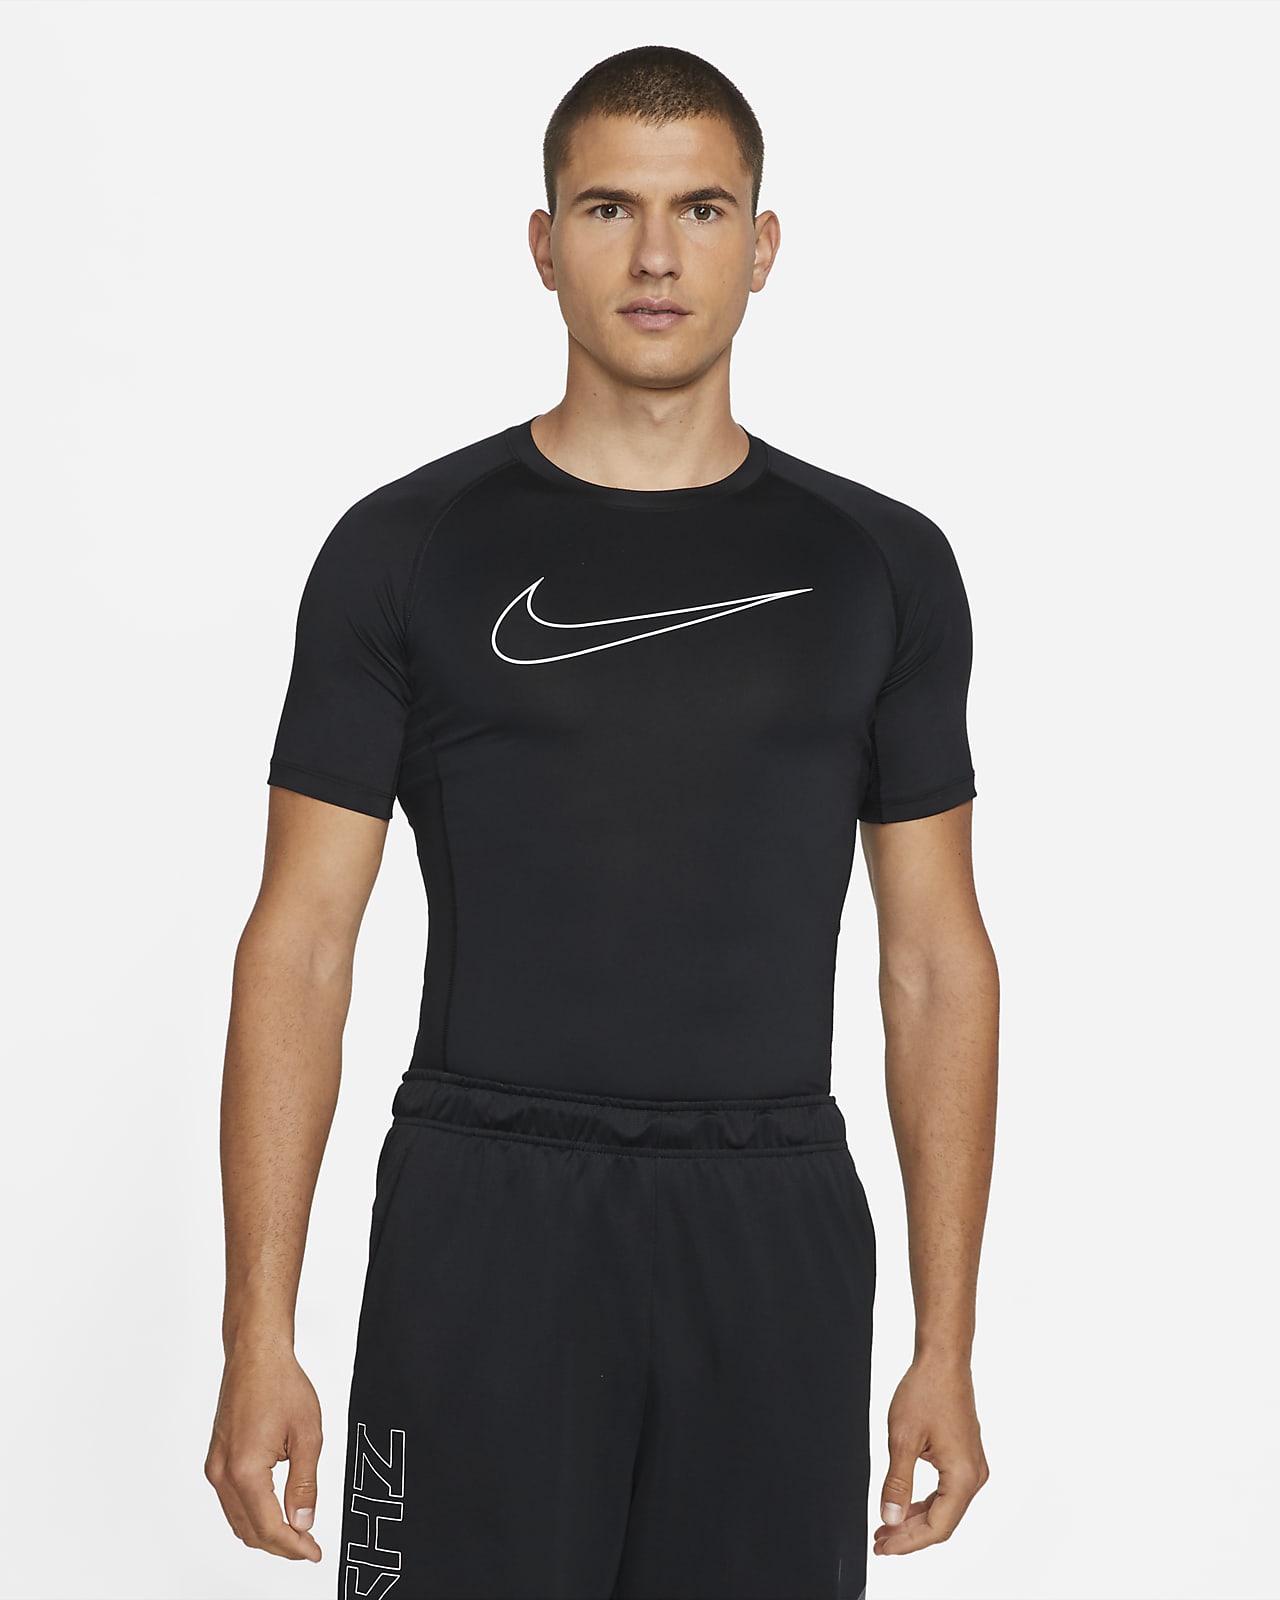 Rezumar Impresión Personalmente Nike Pro Dri-FIT Camiseta de manga corta y ajuste ceñido - Hombre. Nike ES